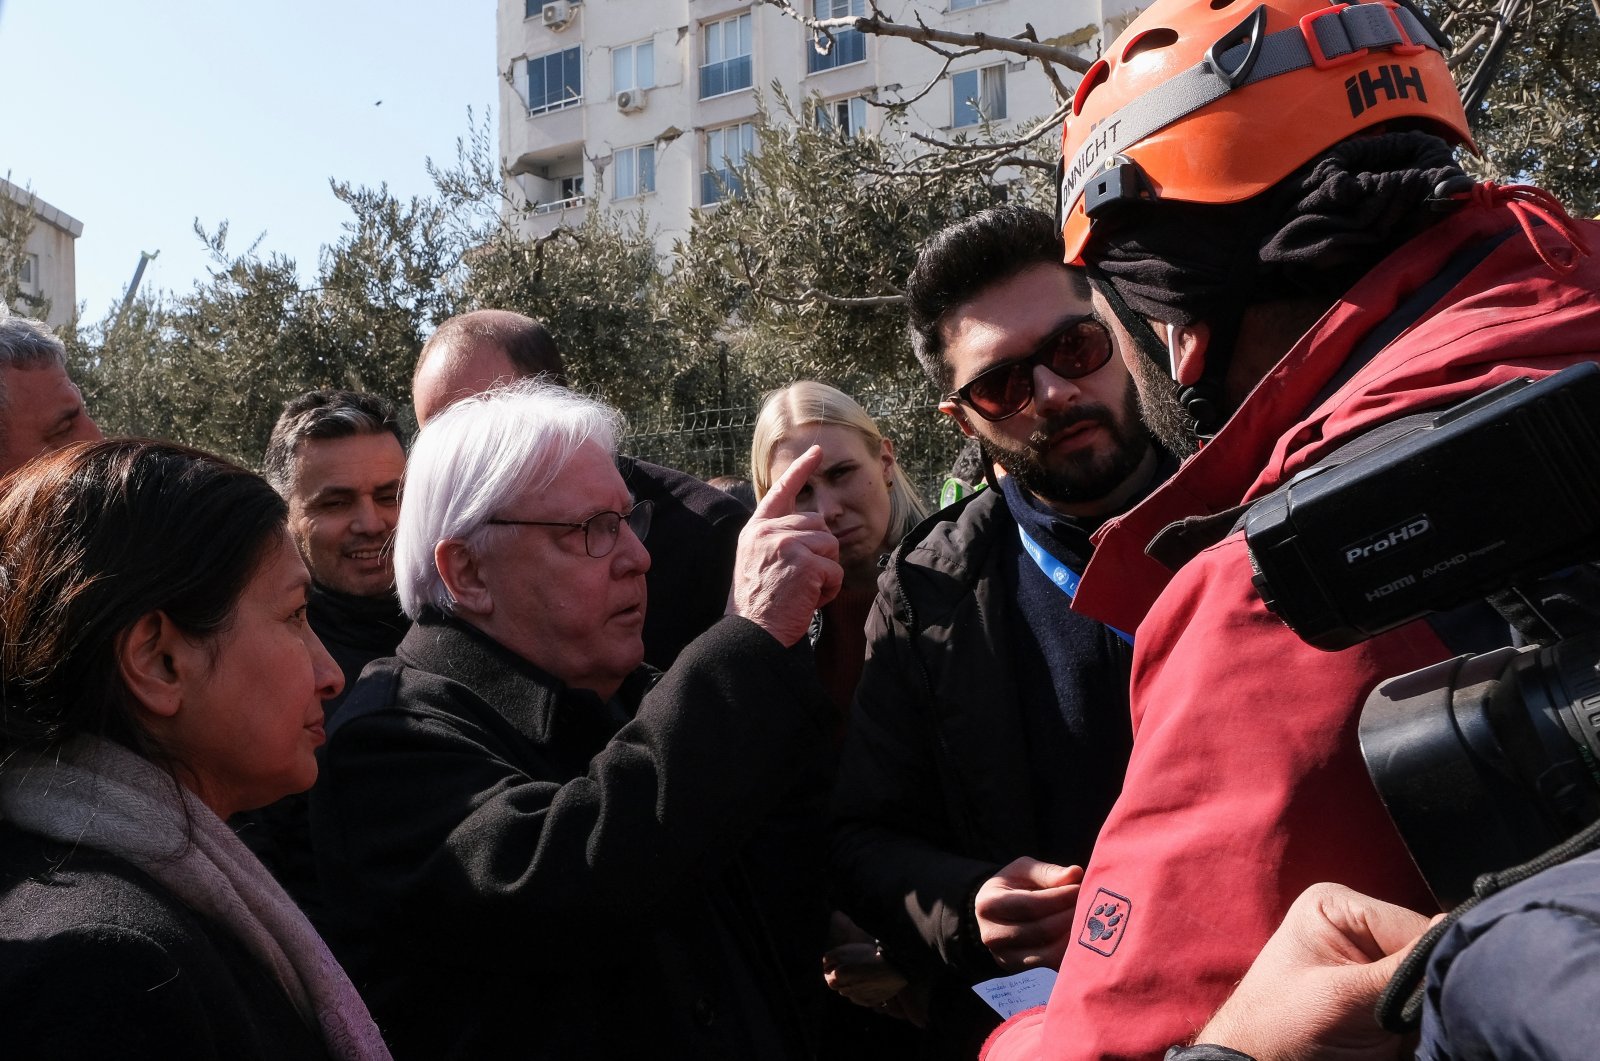 Türkiye gempa ‘peristiwa terburuk’ di abad ini, kata kepala bantuan PBB